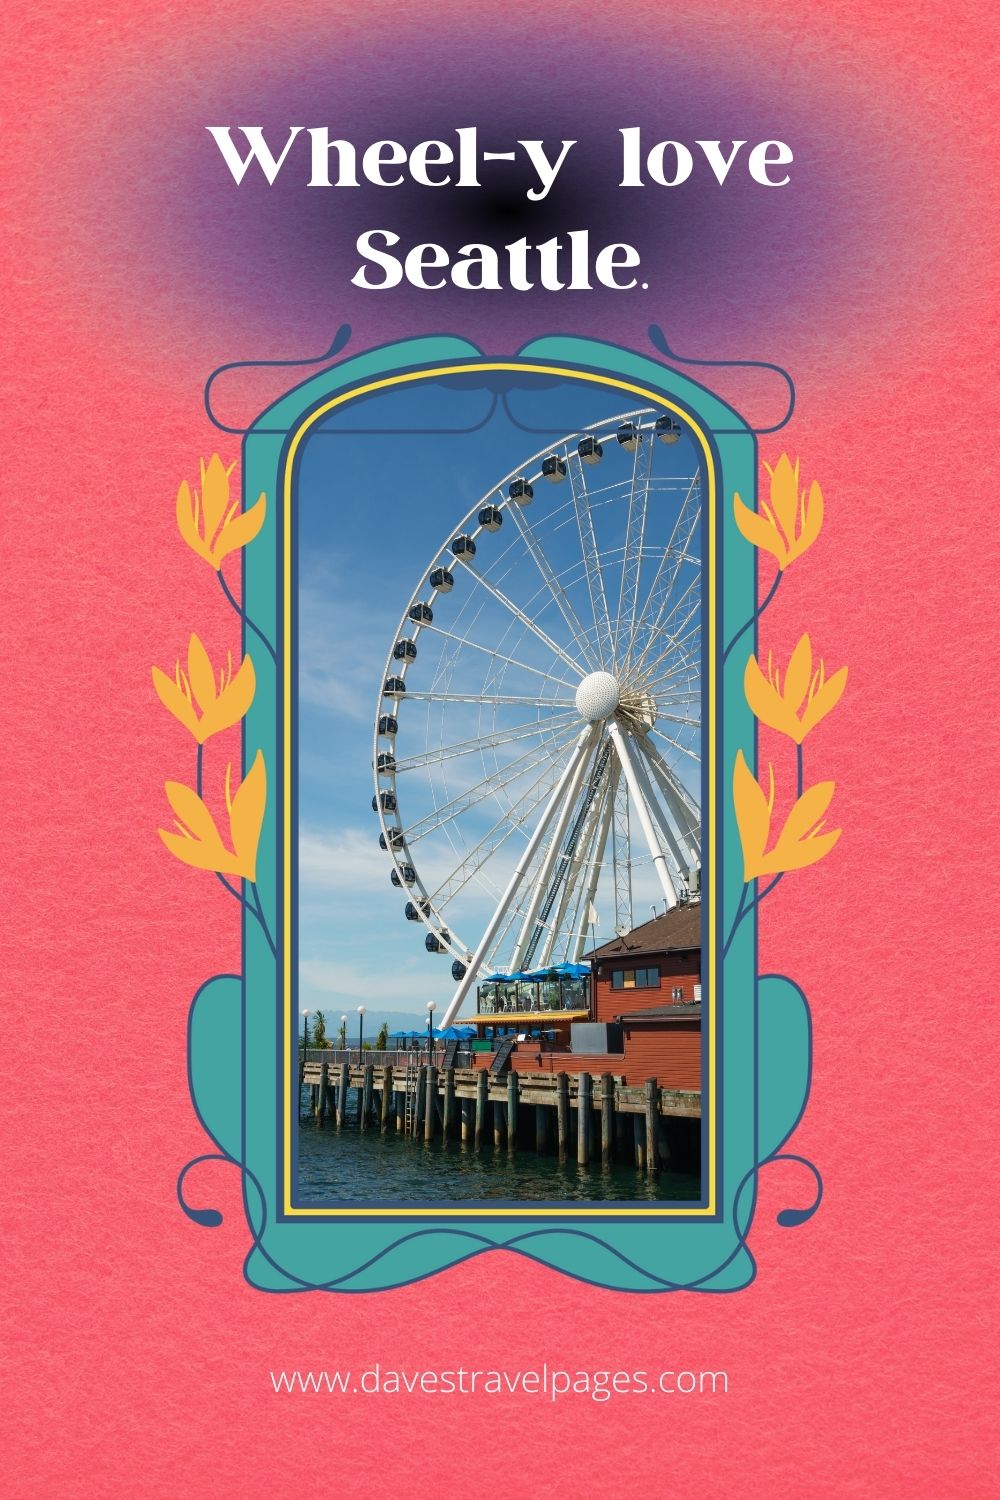 Wheel-y love Seattle